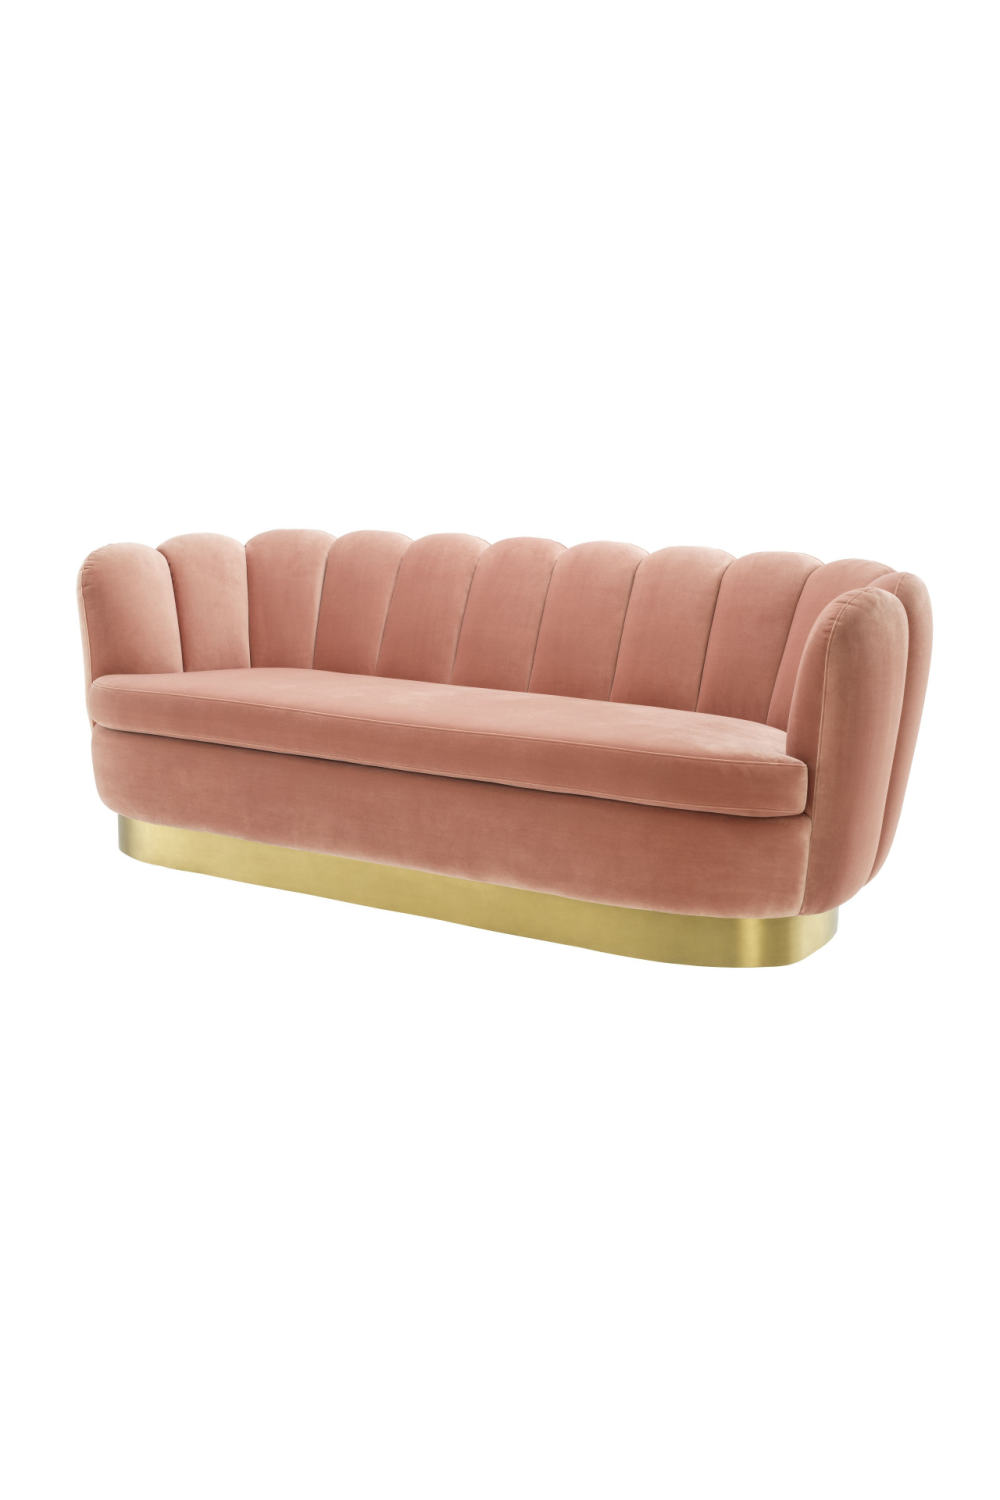 Blush Velvet Scalloped Sofa | Eichholtz Mirage | #1 Eichholtz Retailer